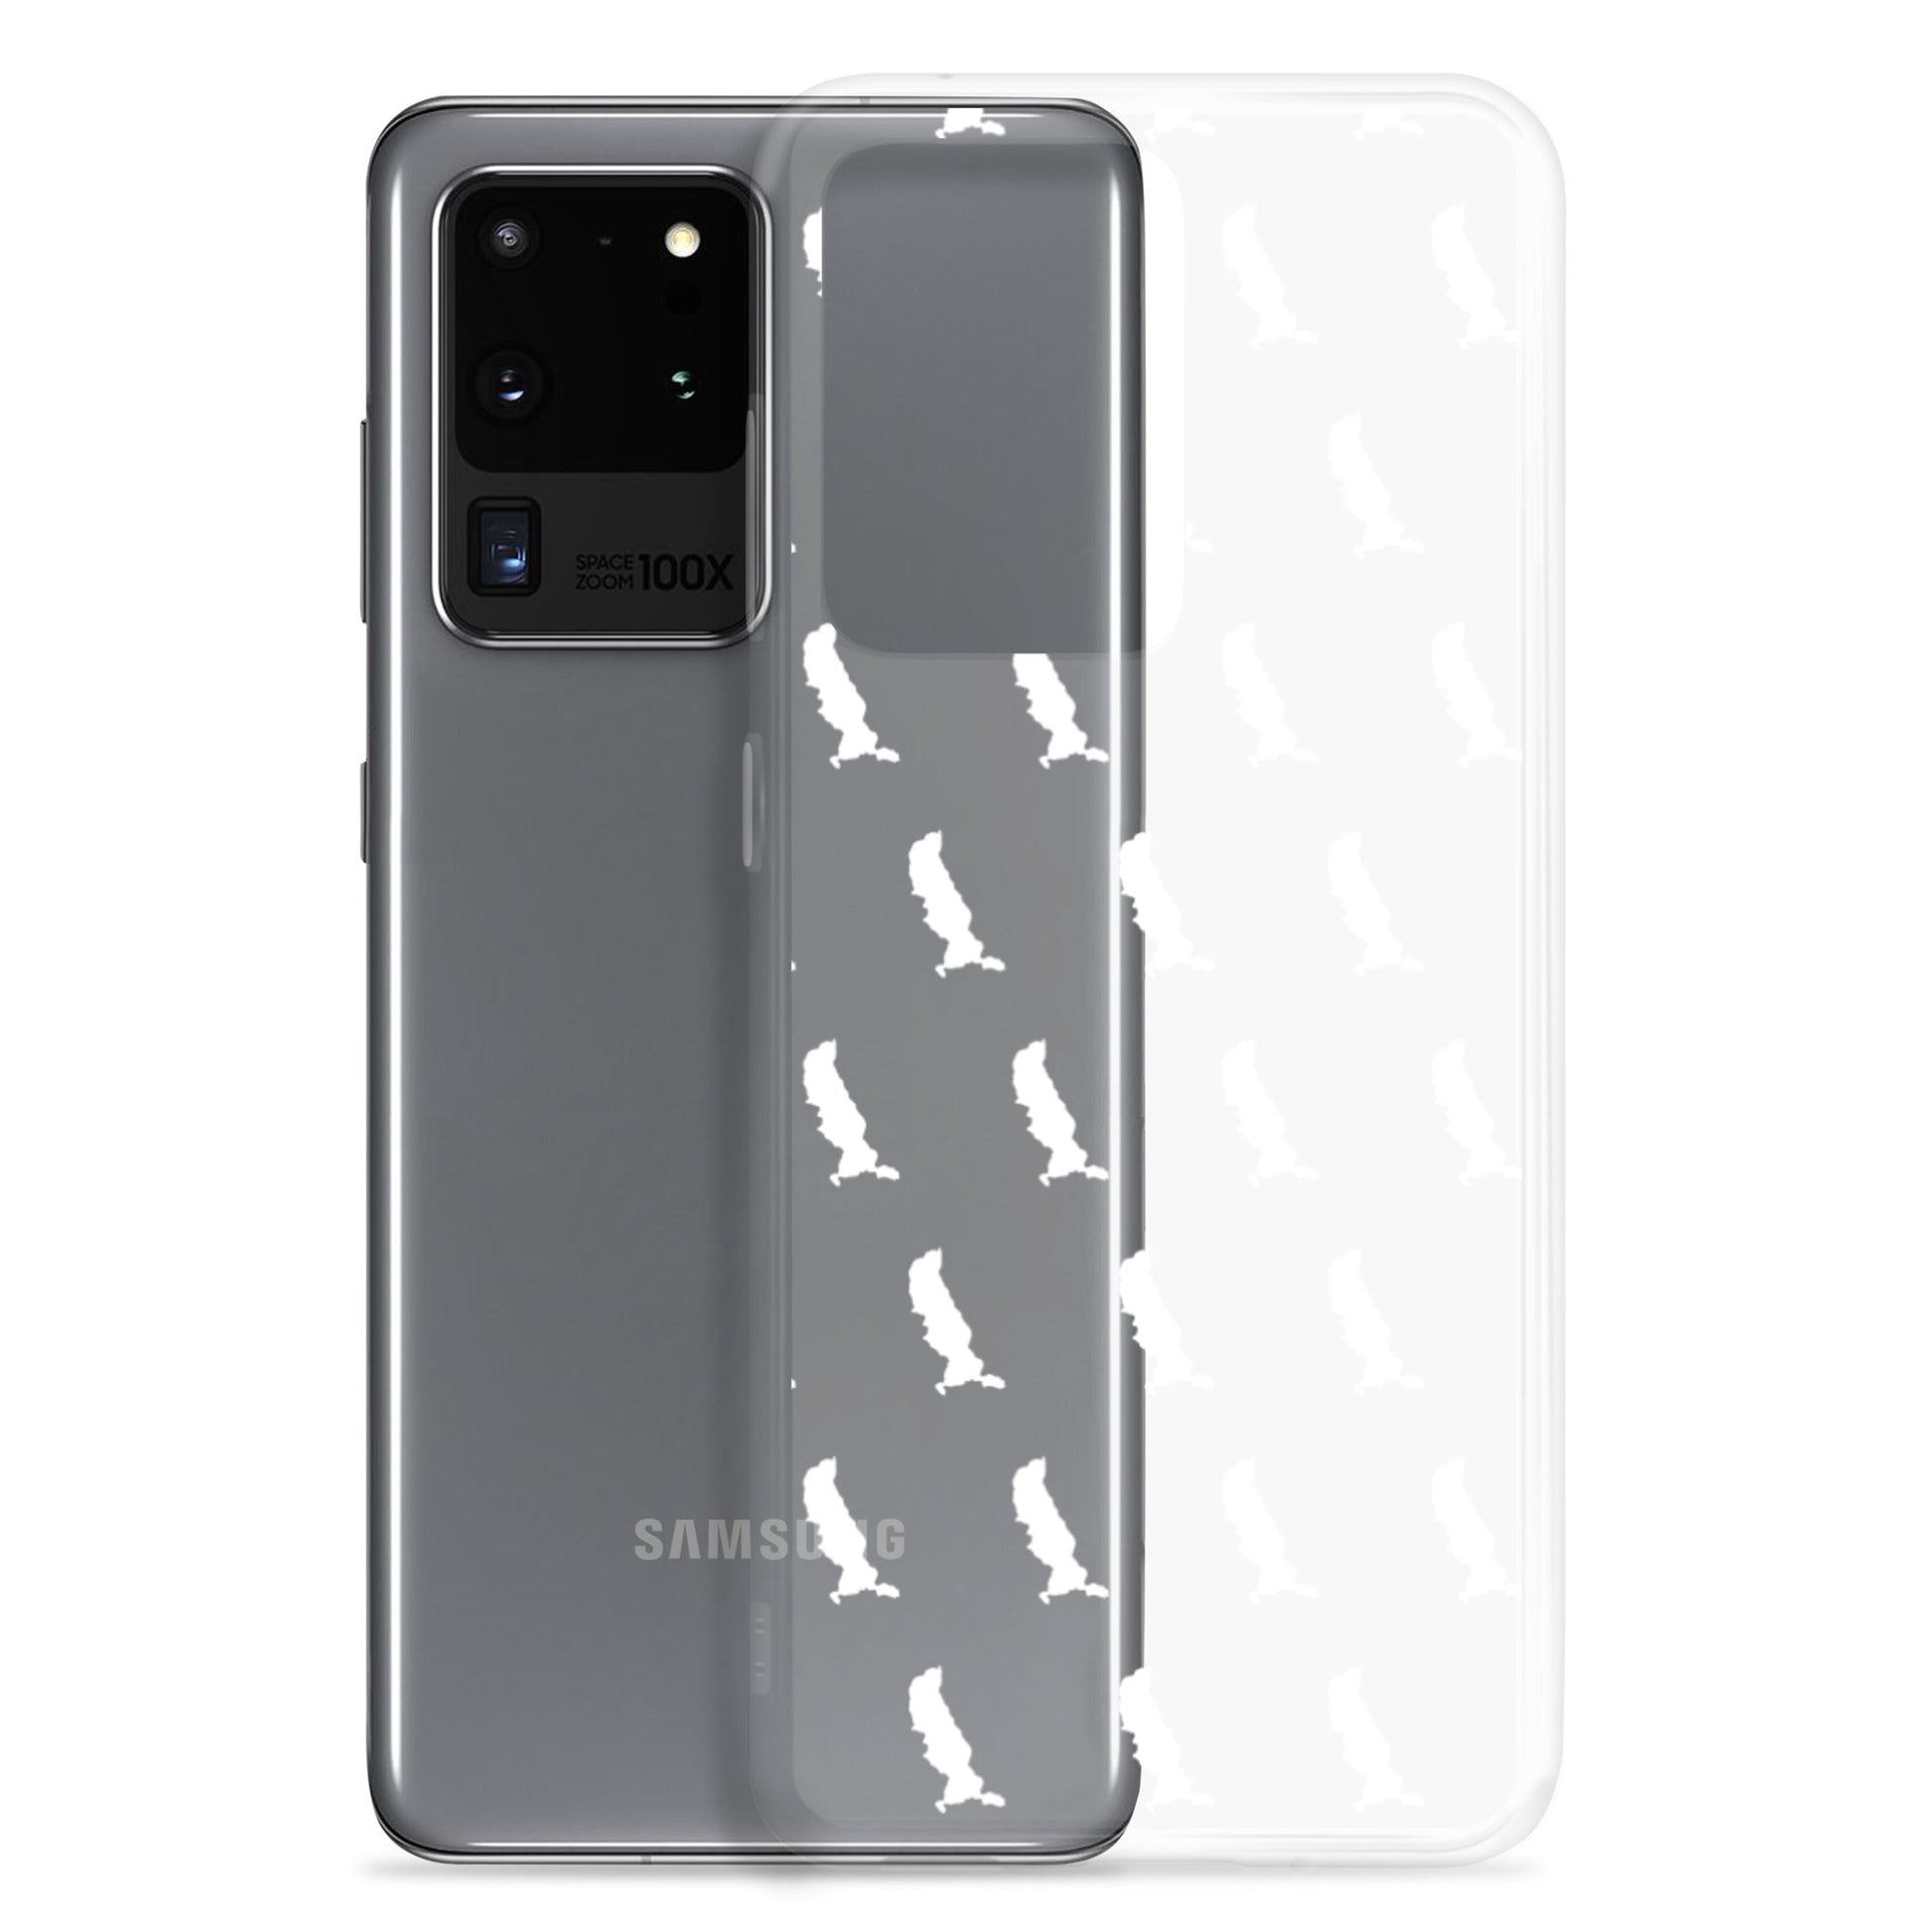 Samsung-Handyhülle mit keinen Tegernsee-Umrissen - Seeduft